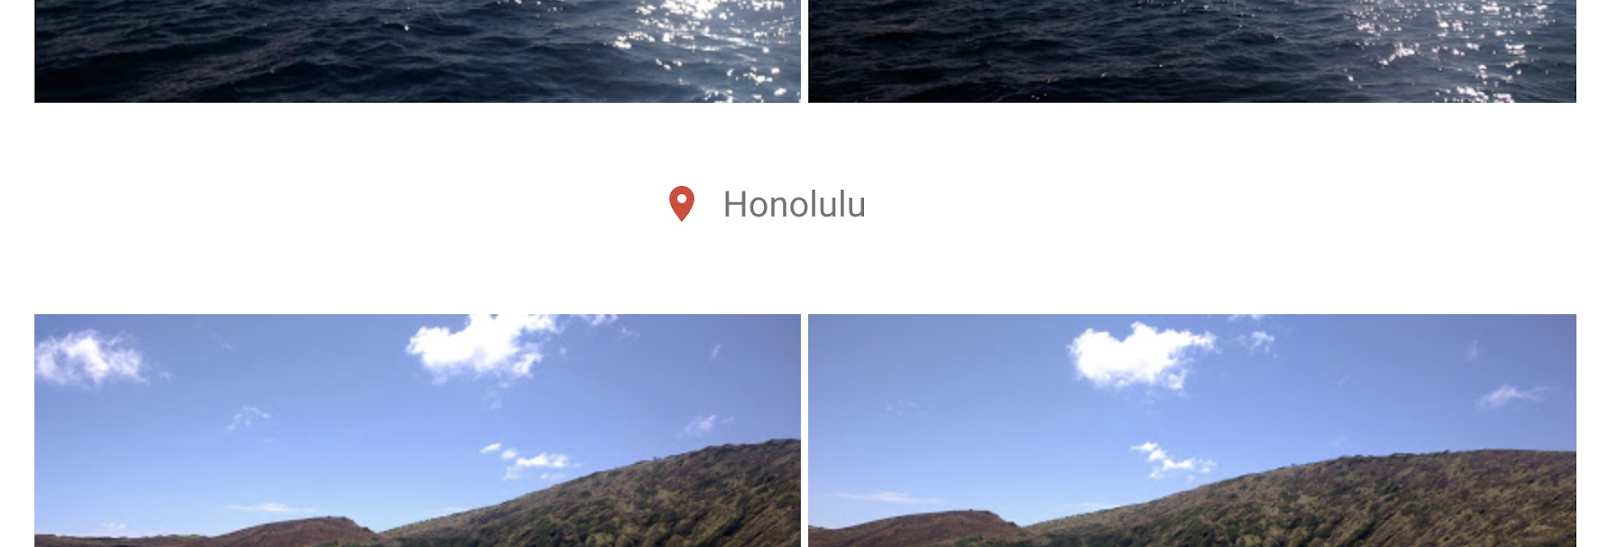 Google Photos में दिखाए गए, जगह की जानकारी को बेहतर बनाने की सुविधा का स्क्रीनशॉट